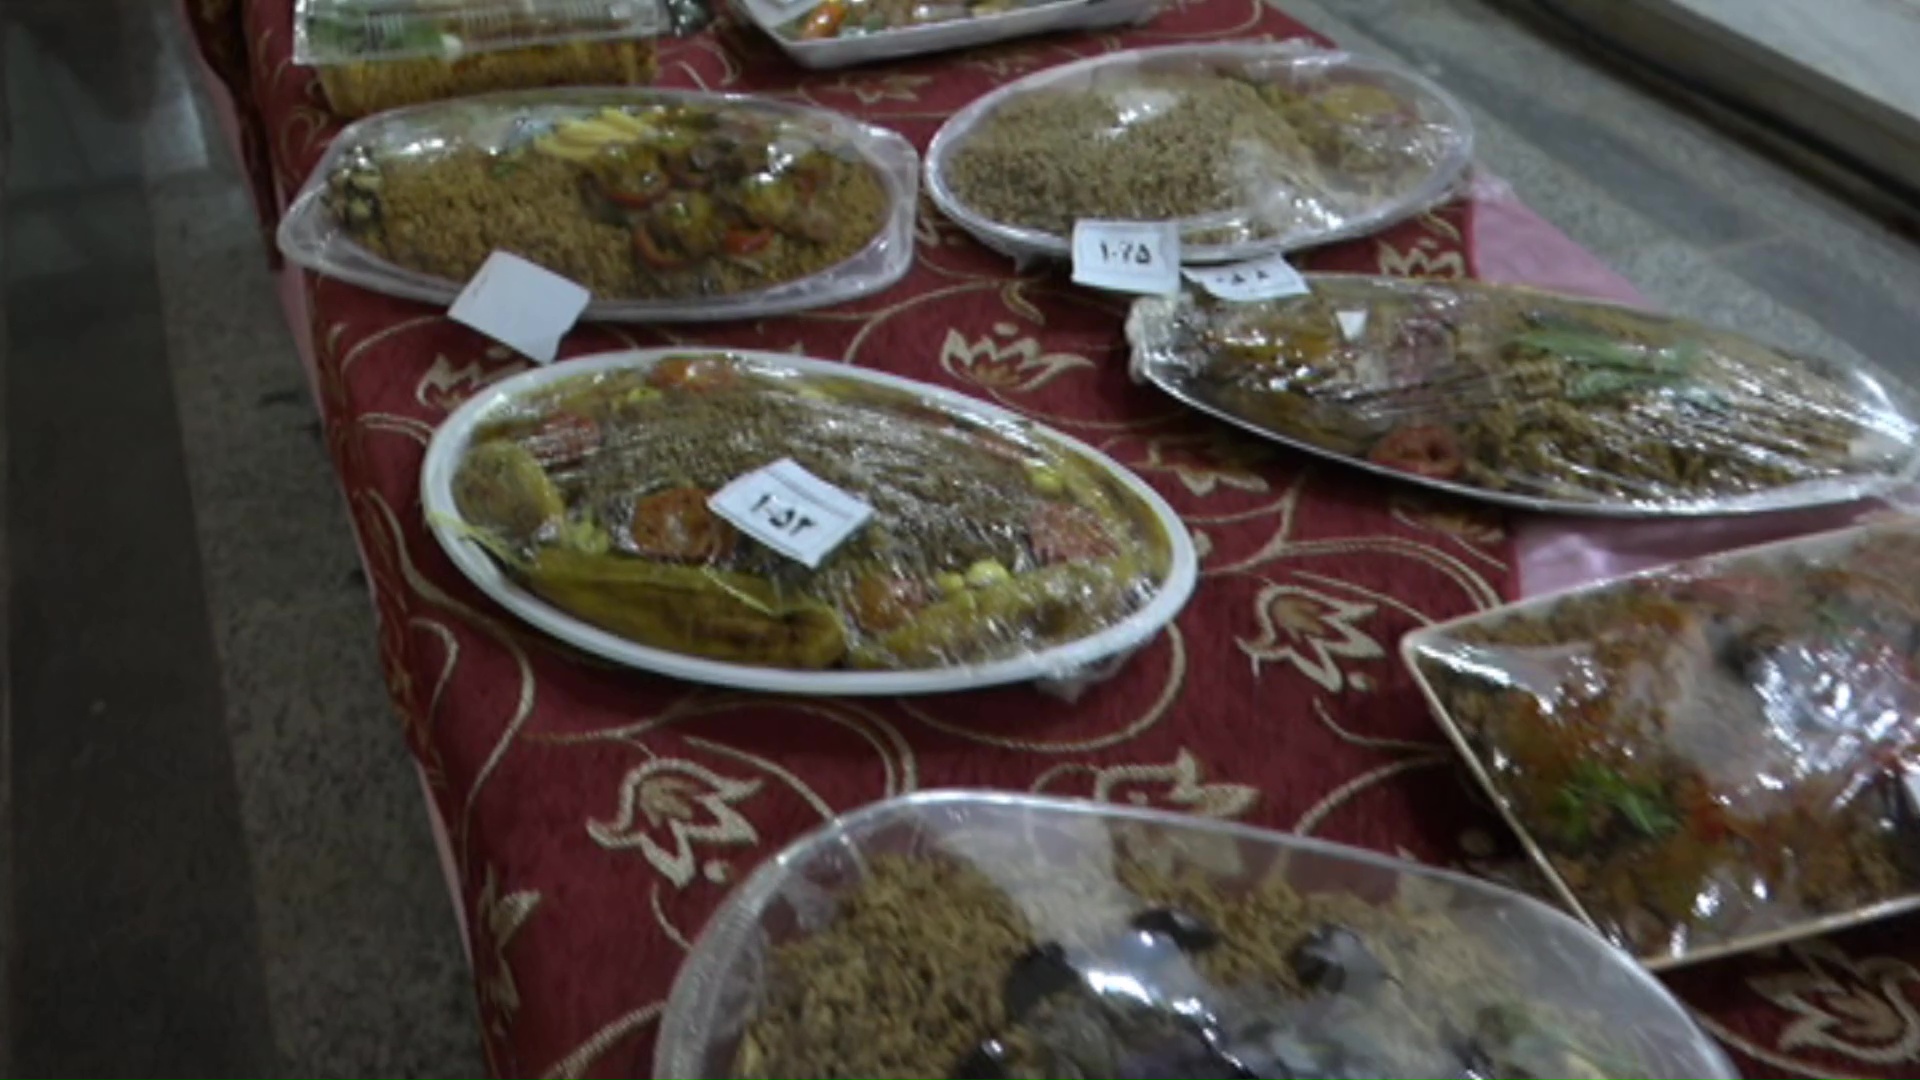 جشنواره ای غذای محلی و سنتی هدیه ی کریمانه ی قرآنیان به ایتام و نیازمندان طبس